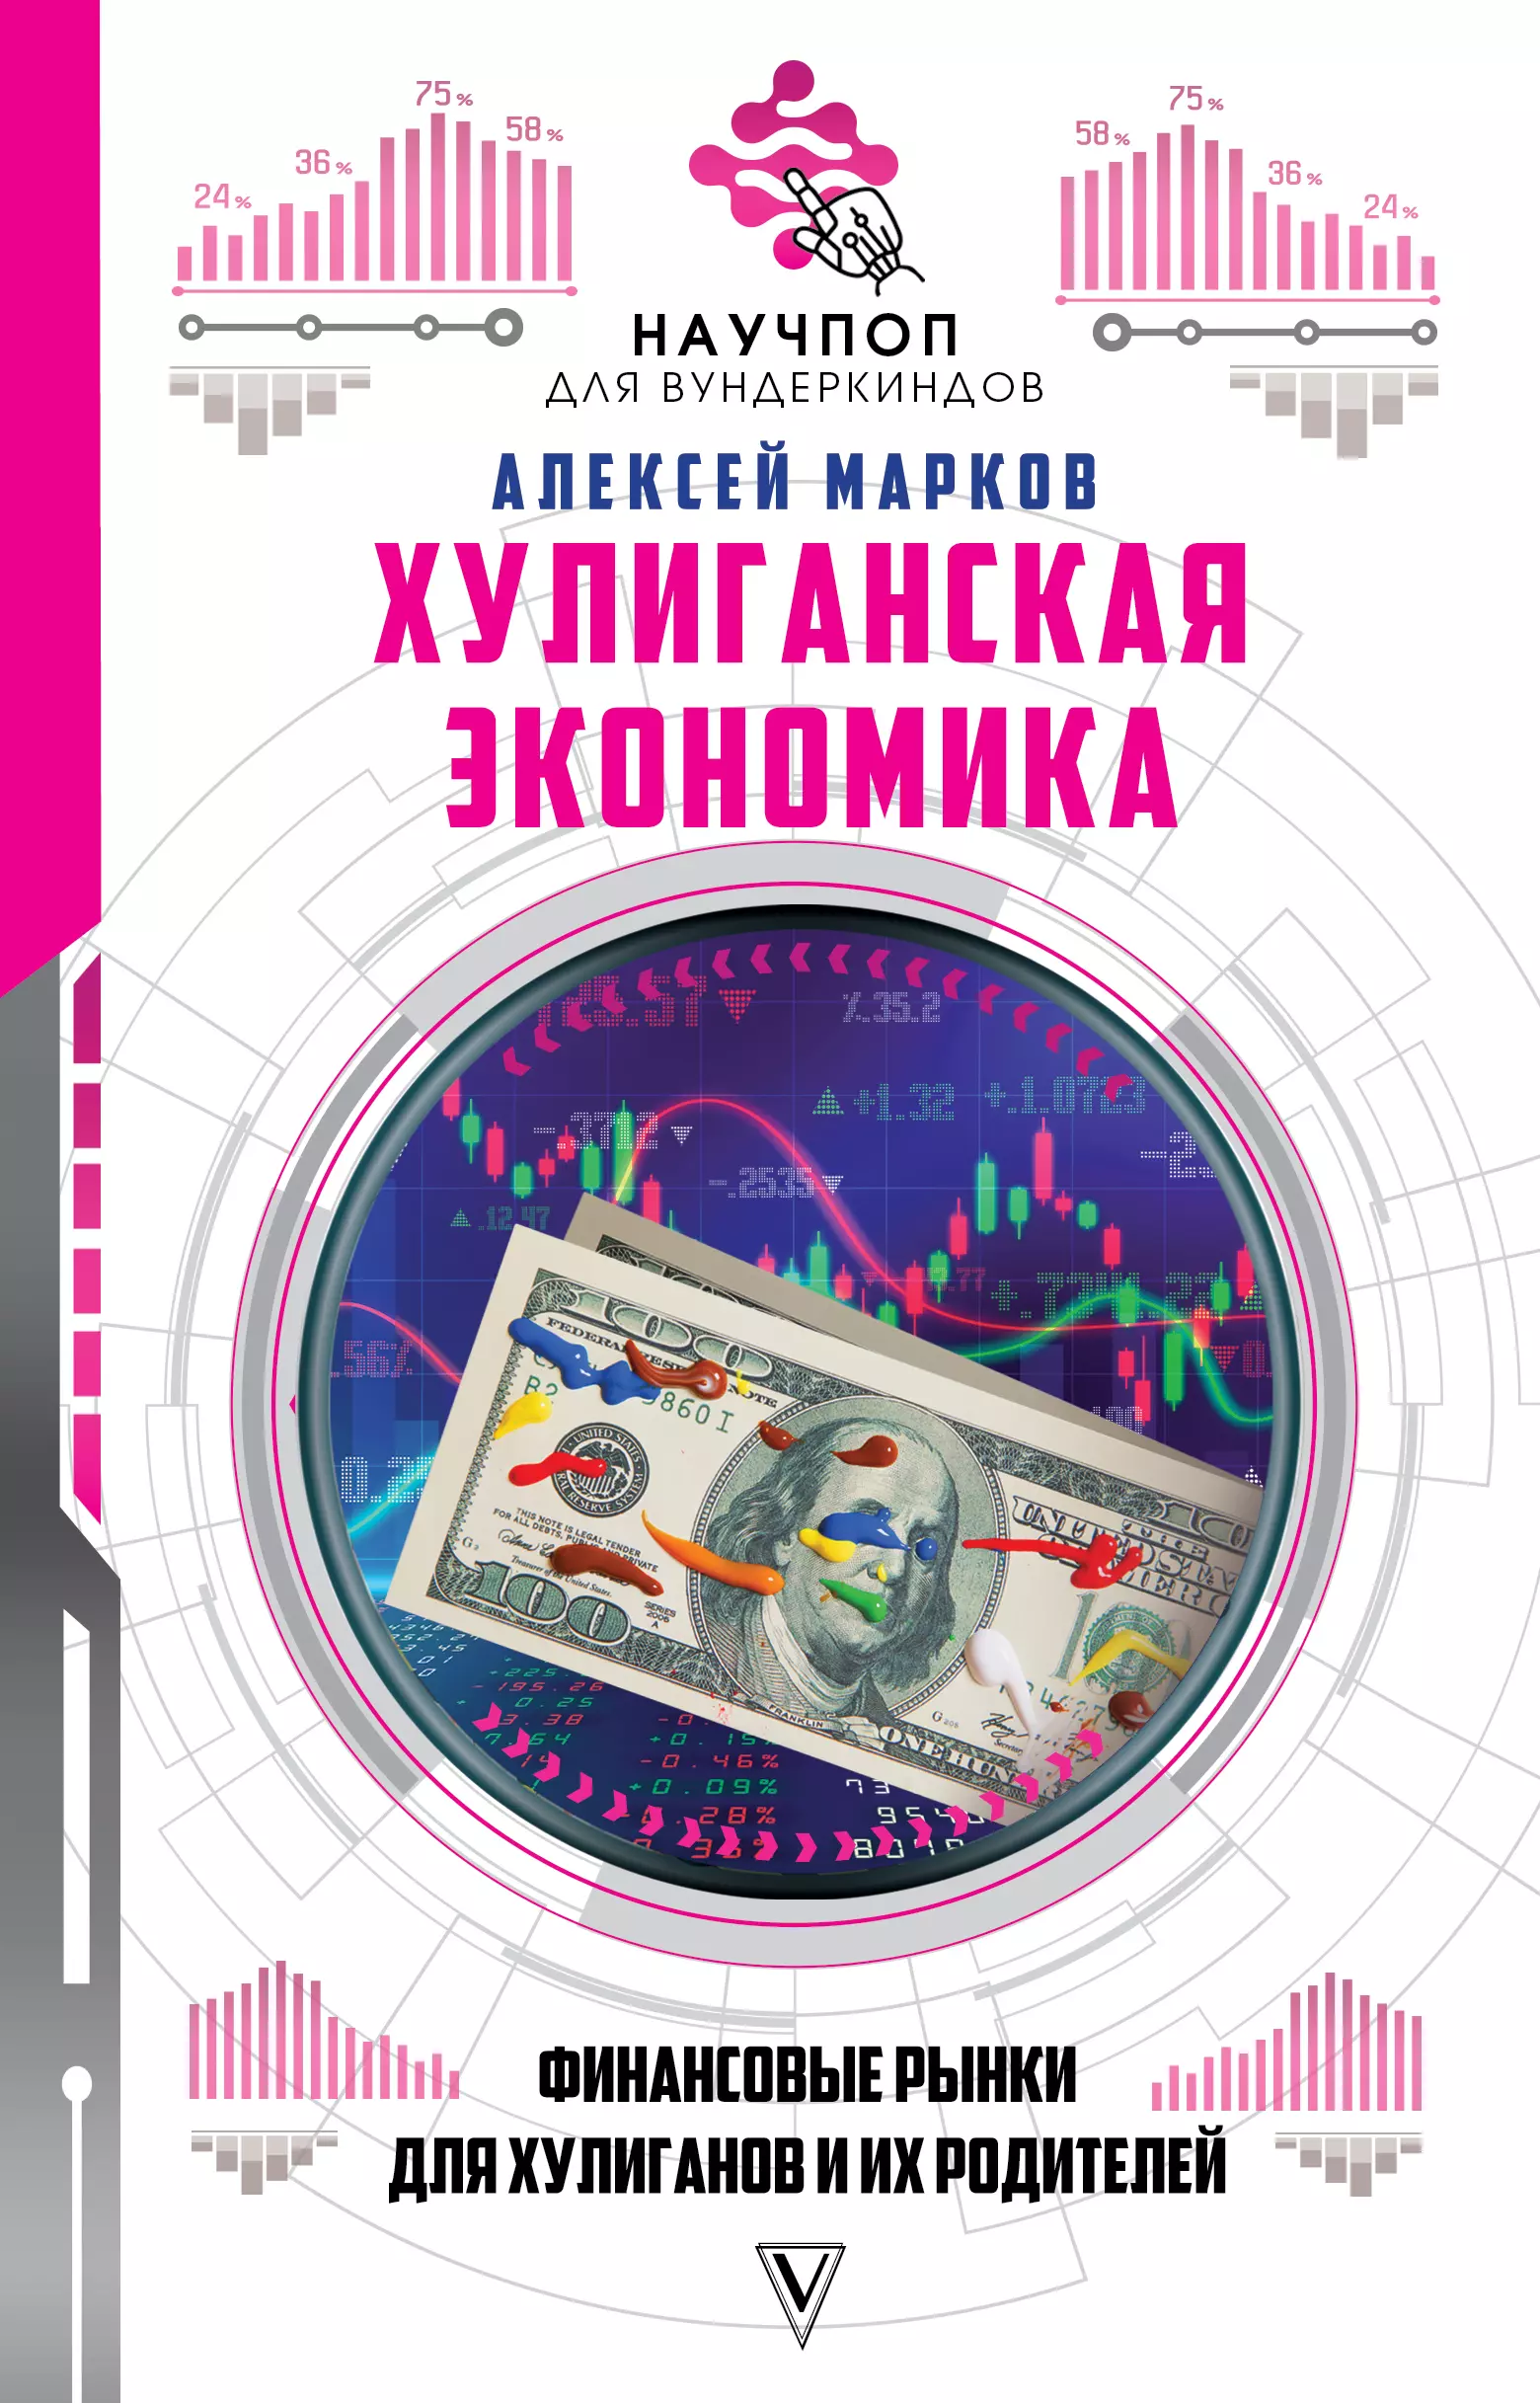 Марков Алексей Викторович - Хулиганская экономика: финансовые рынки для хулиганов и их родителей